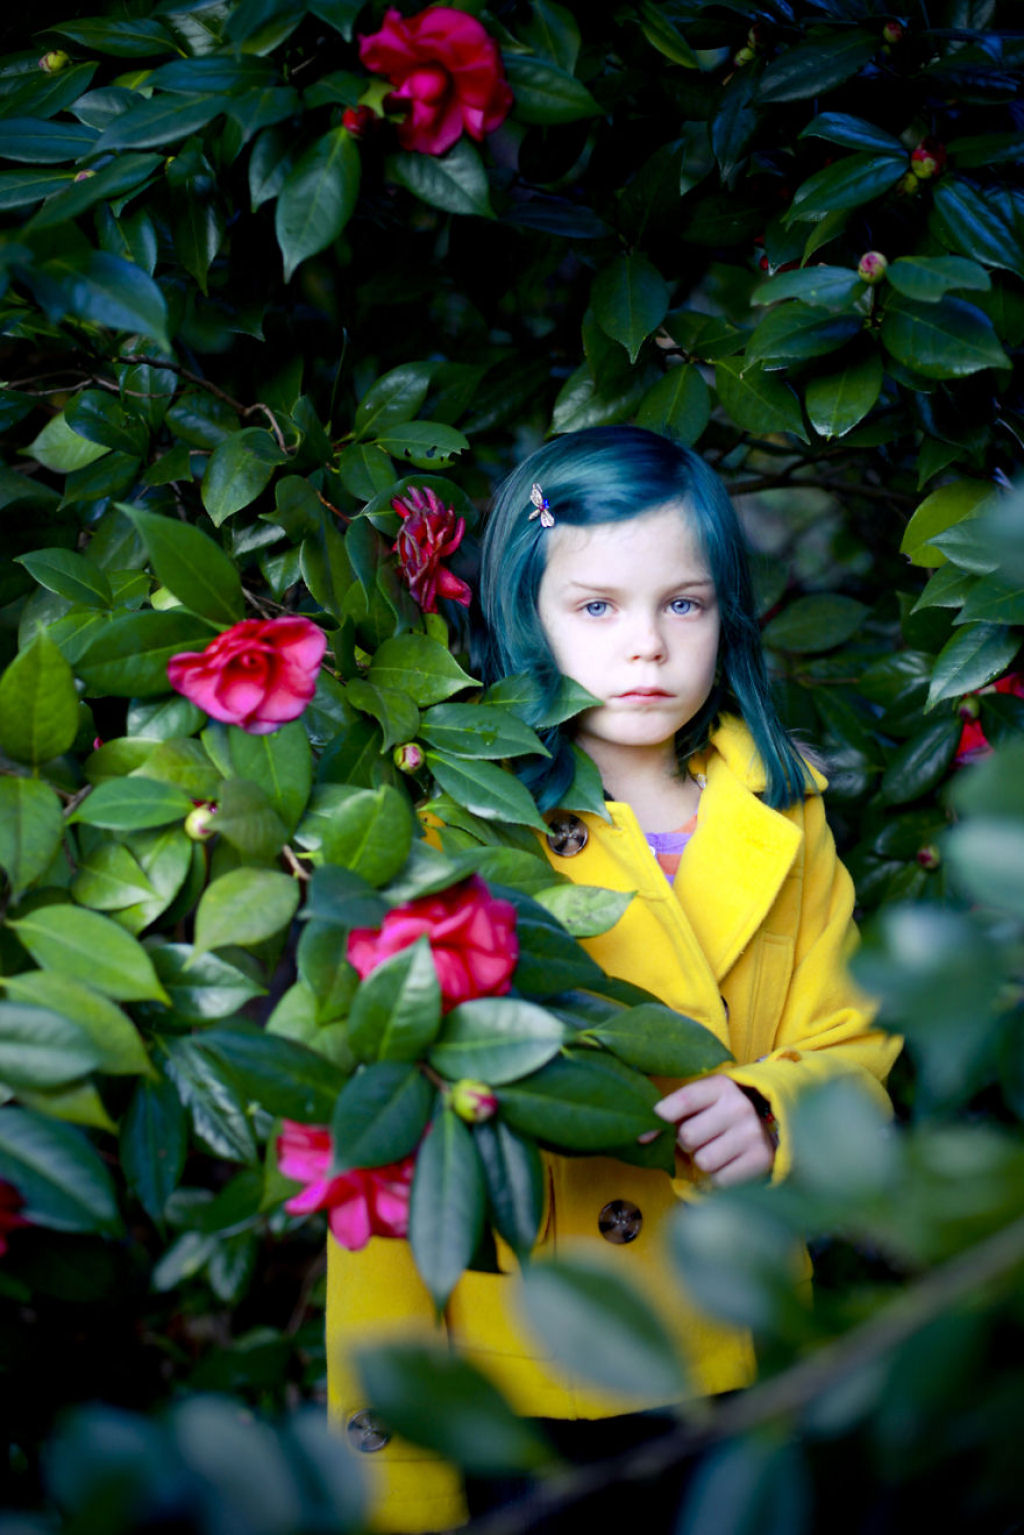 Fotógrafa transforma filha de 9 anos em personagens famosas 05